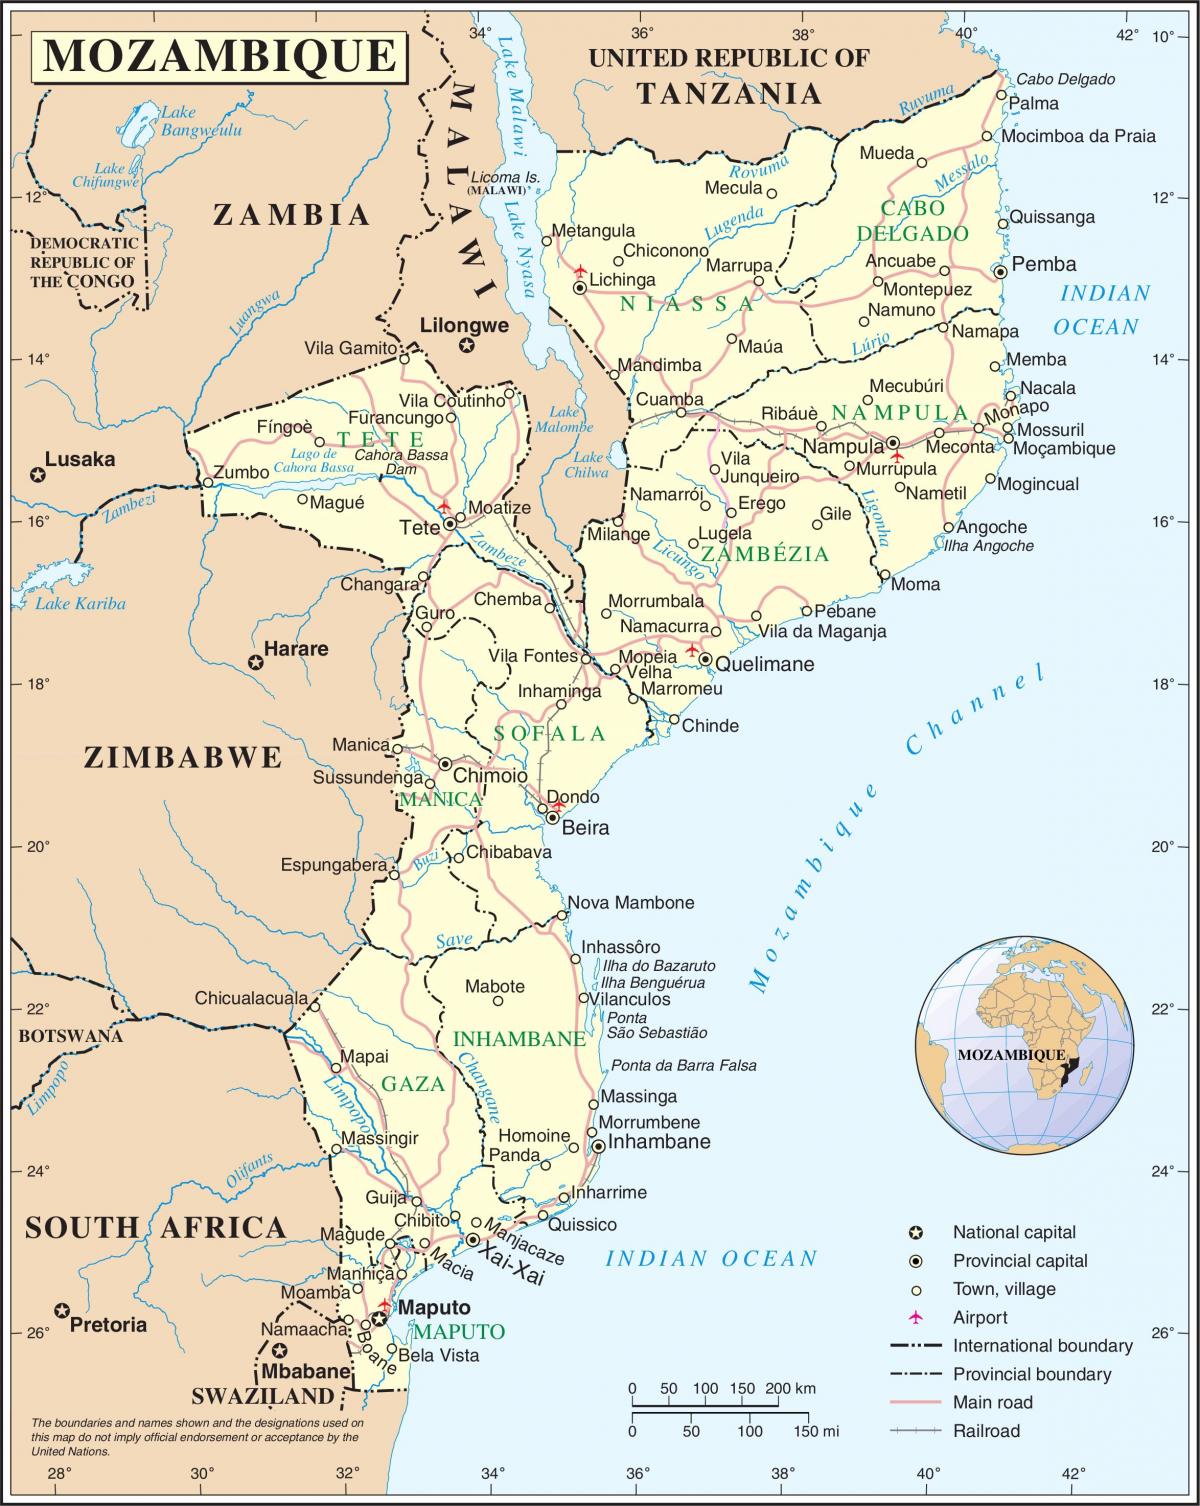 lufthavne i Mozambique på et kort